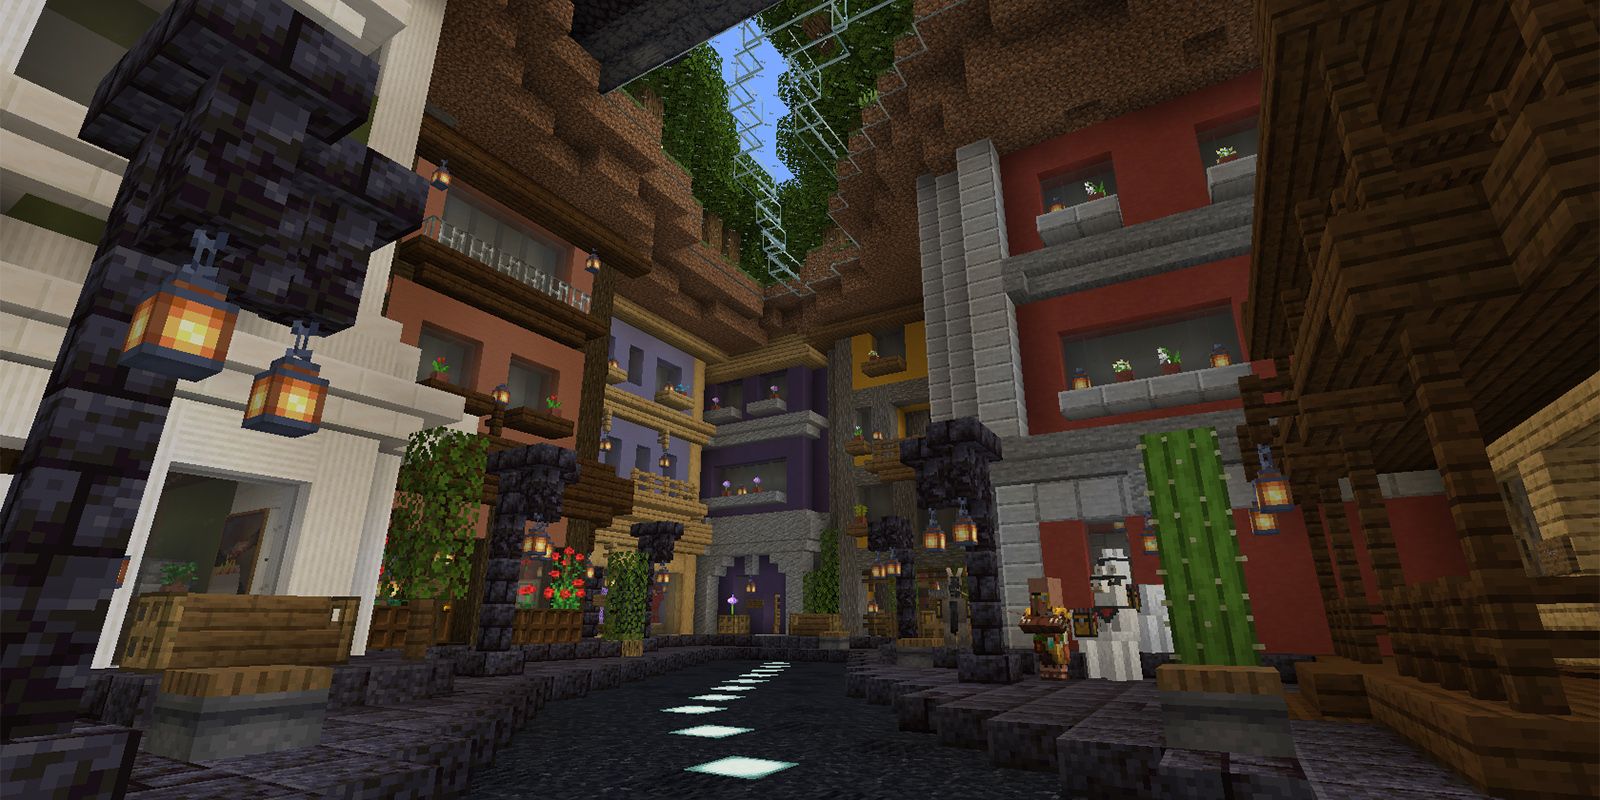  Minecraft  Ravine Hides a Small City  In Super Creative 